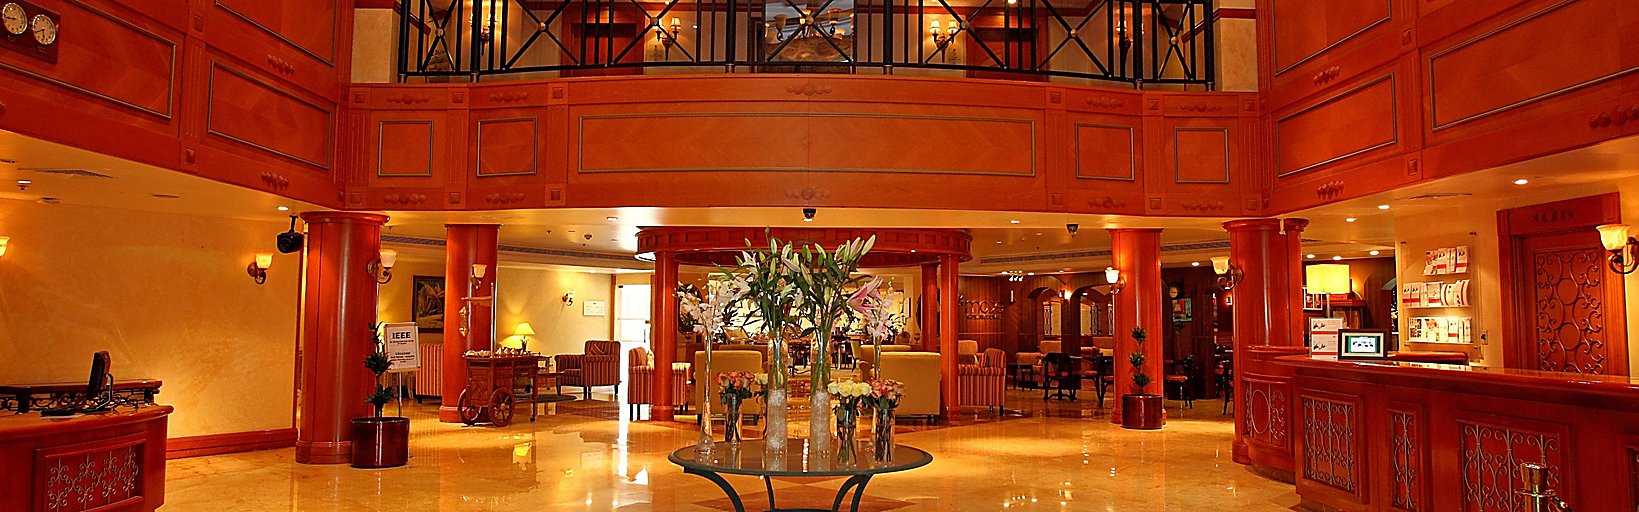 Holiday Inn Al Khobar Ihgのホテル